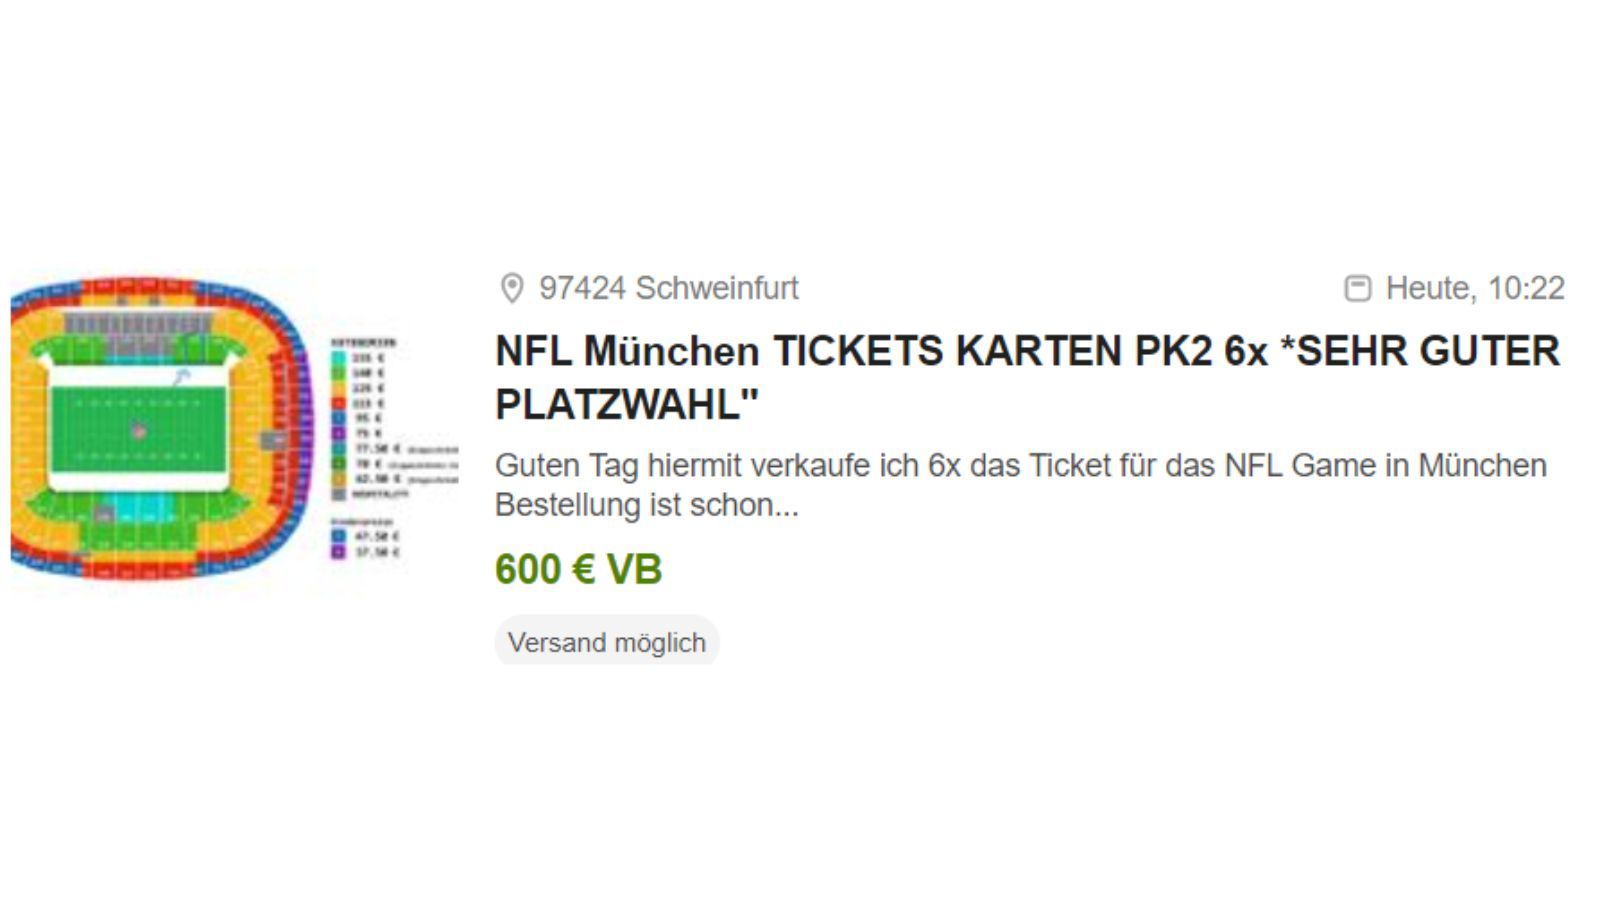 
                <strong>Horrende eBay-Angebote für das NFL-Spiel in Deutschland</strong><br>
                Sechs Tickets für 600 Euro? Klar, glauben wir sofort.
              